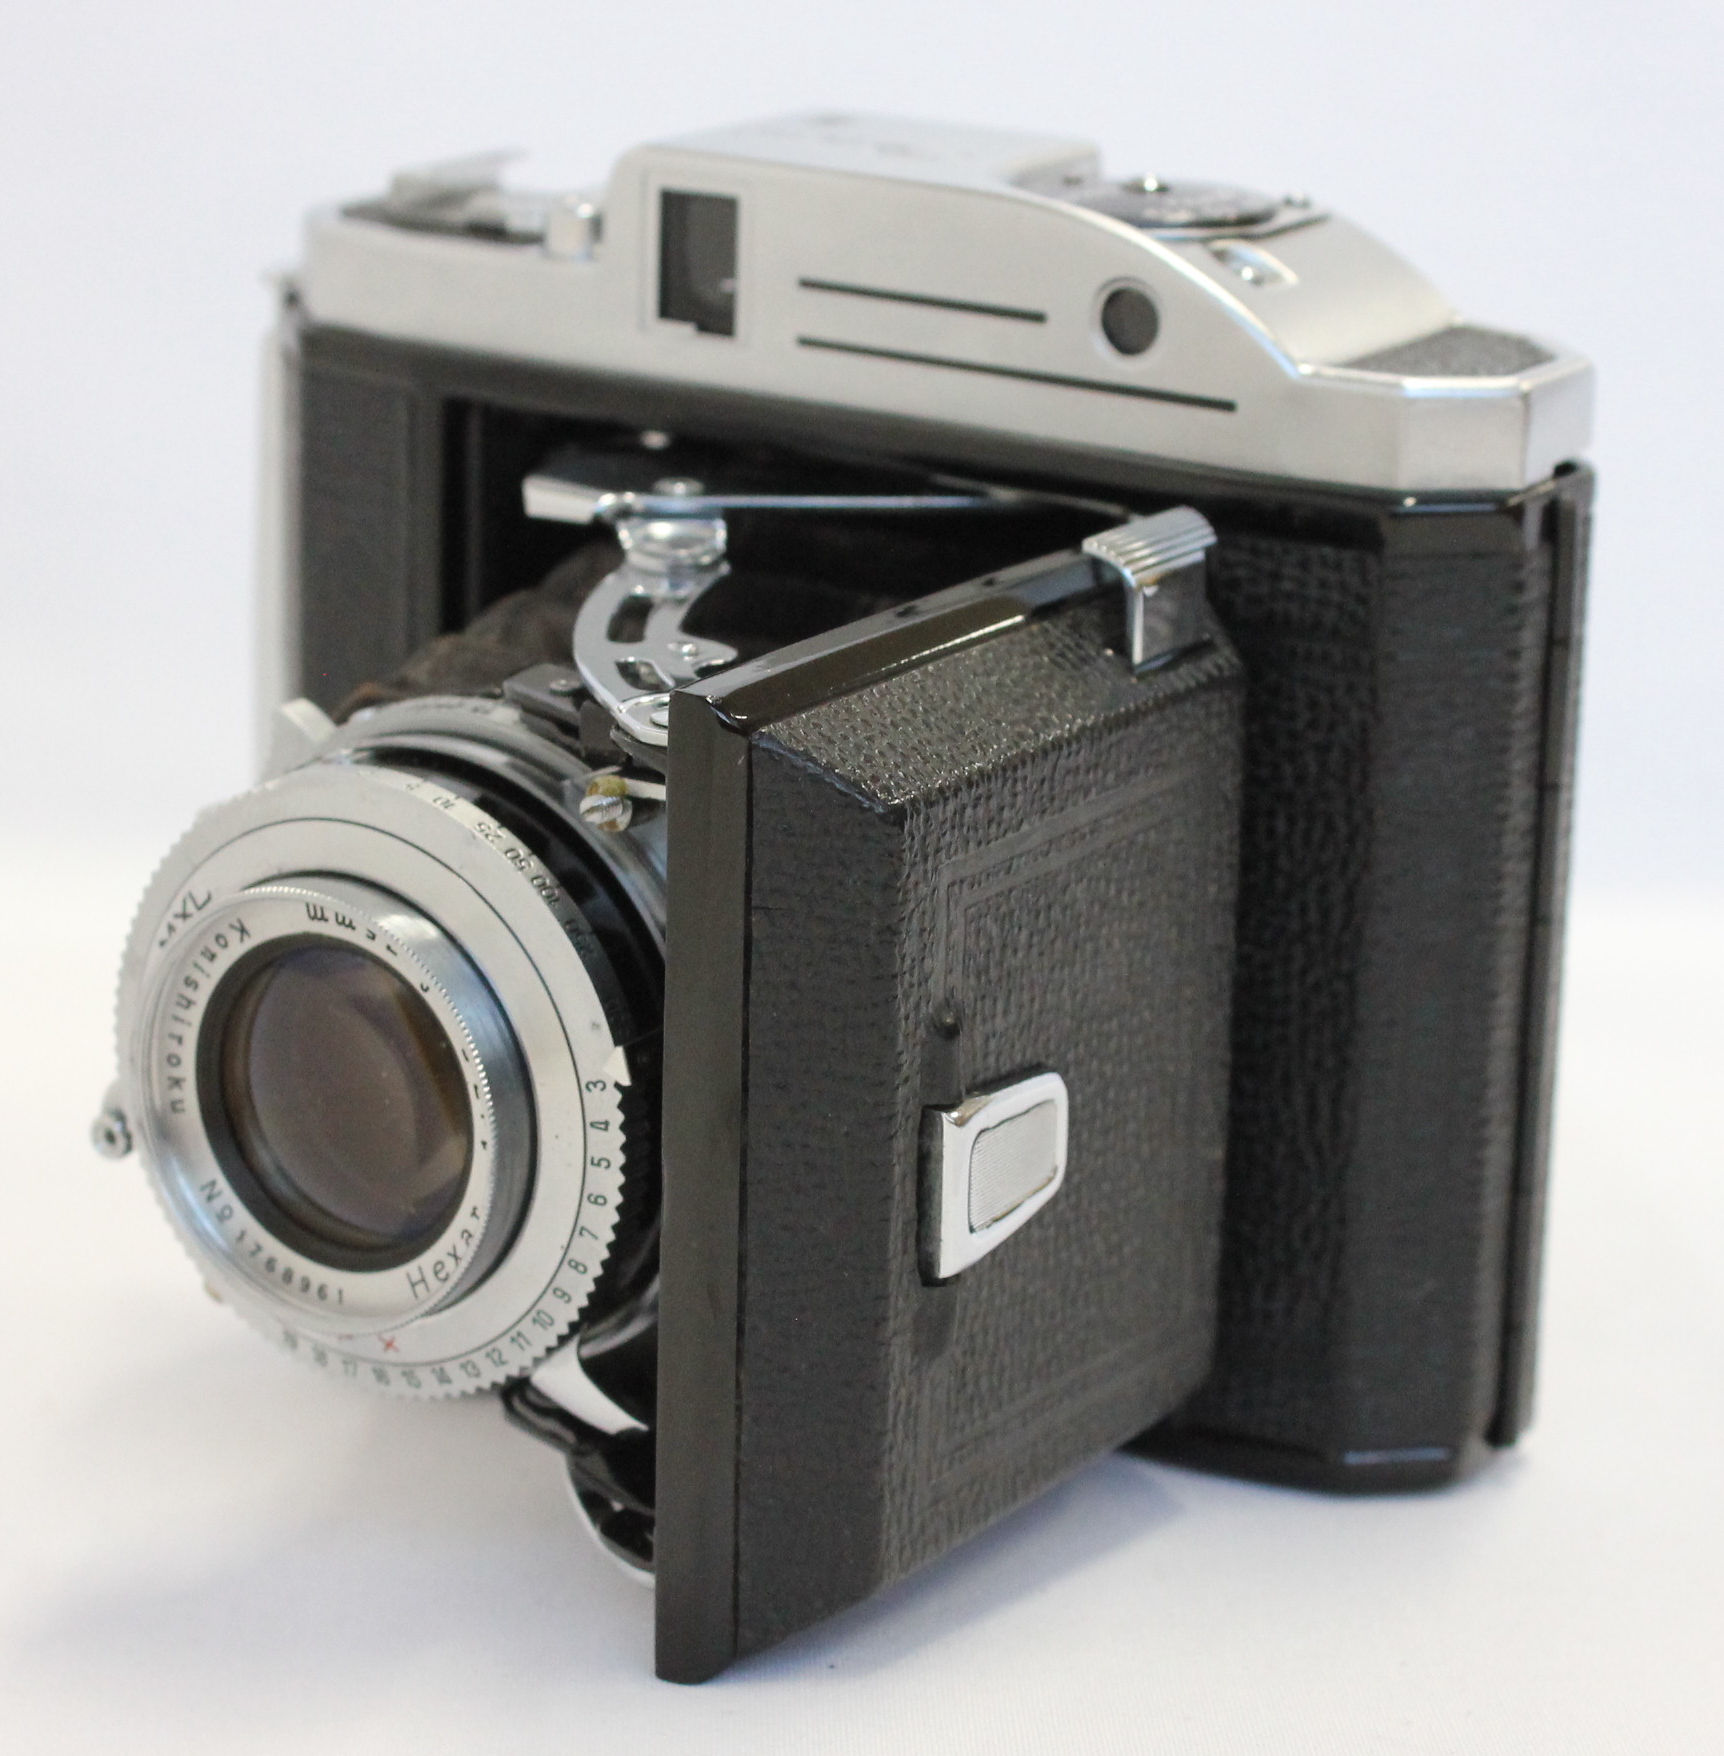 Konica Konishiroku Pearl III 6x4.5 Camera with Hexar 75mm F/3.5 Lens from  Japan (C1252) | Big Fish J-Camera (Big Fish J-Shop)